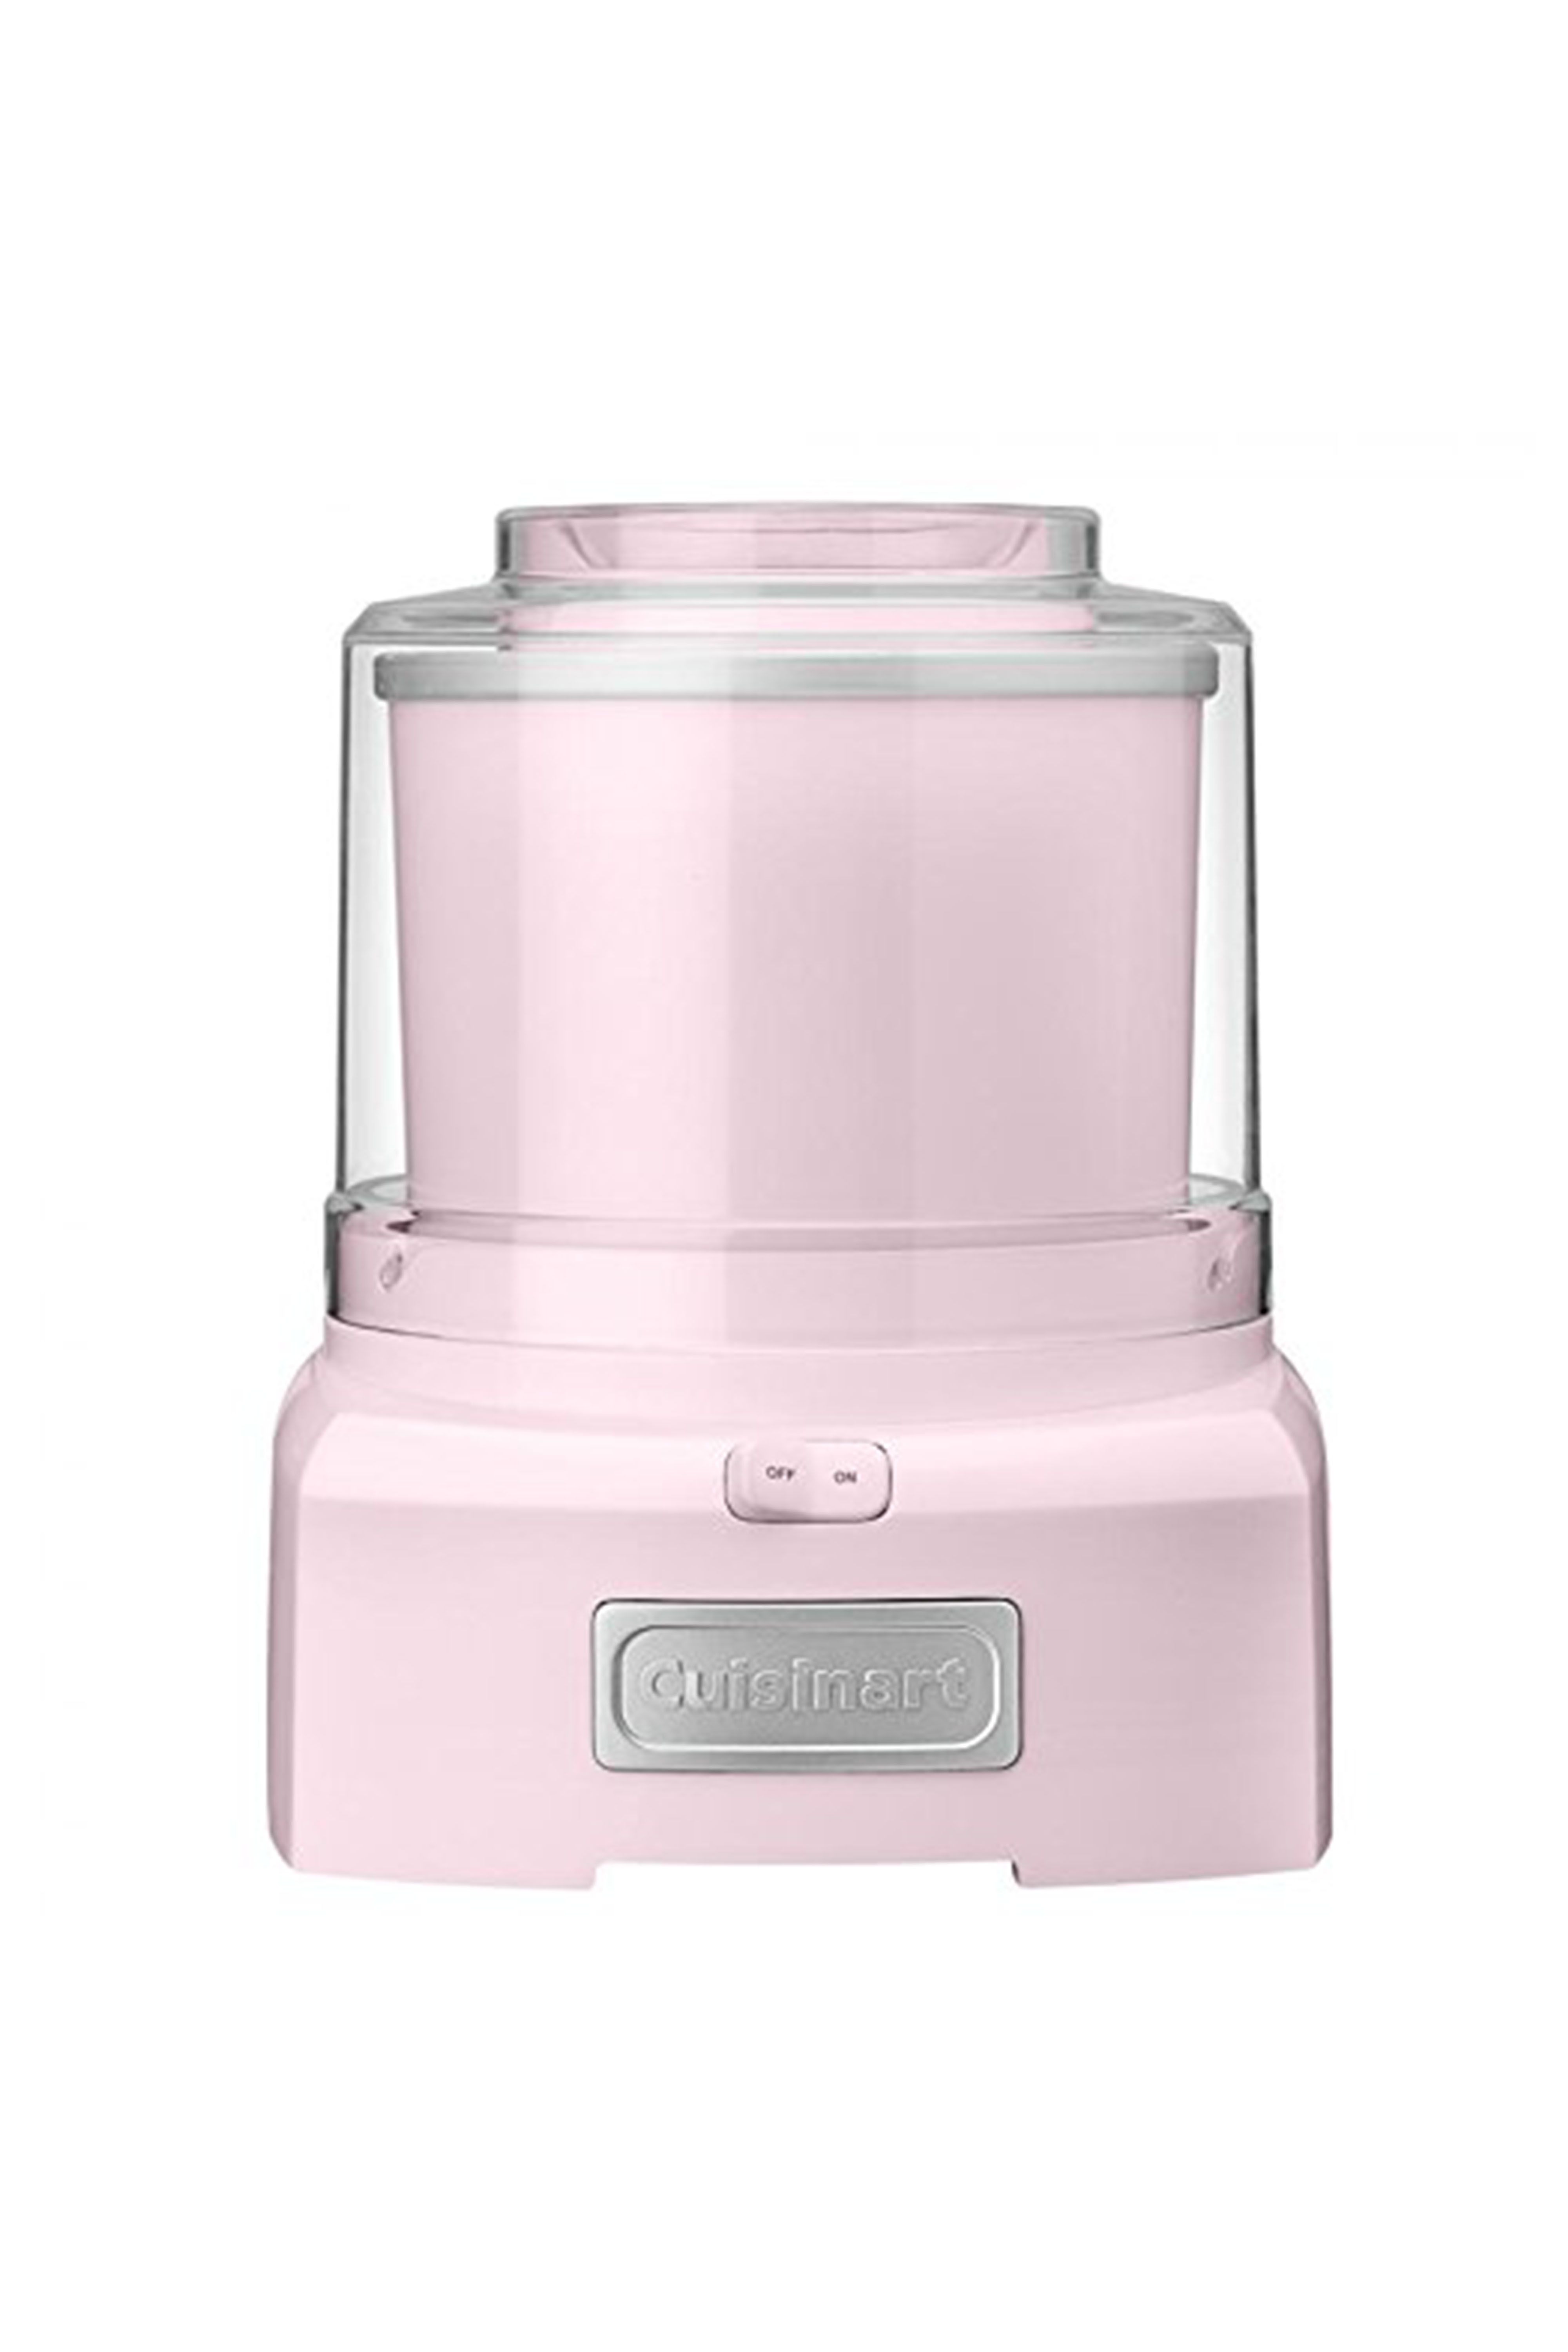 20 of the Best Pink Kitchen Accessories - Pink Appliances and Kitchenware -  Melanie Jade Design